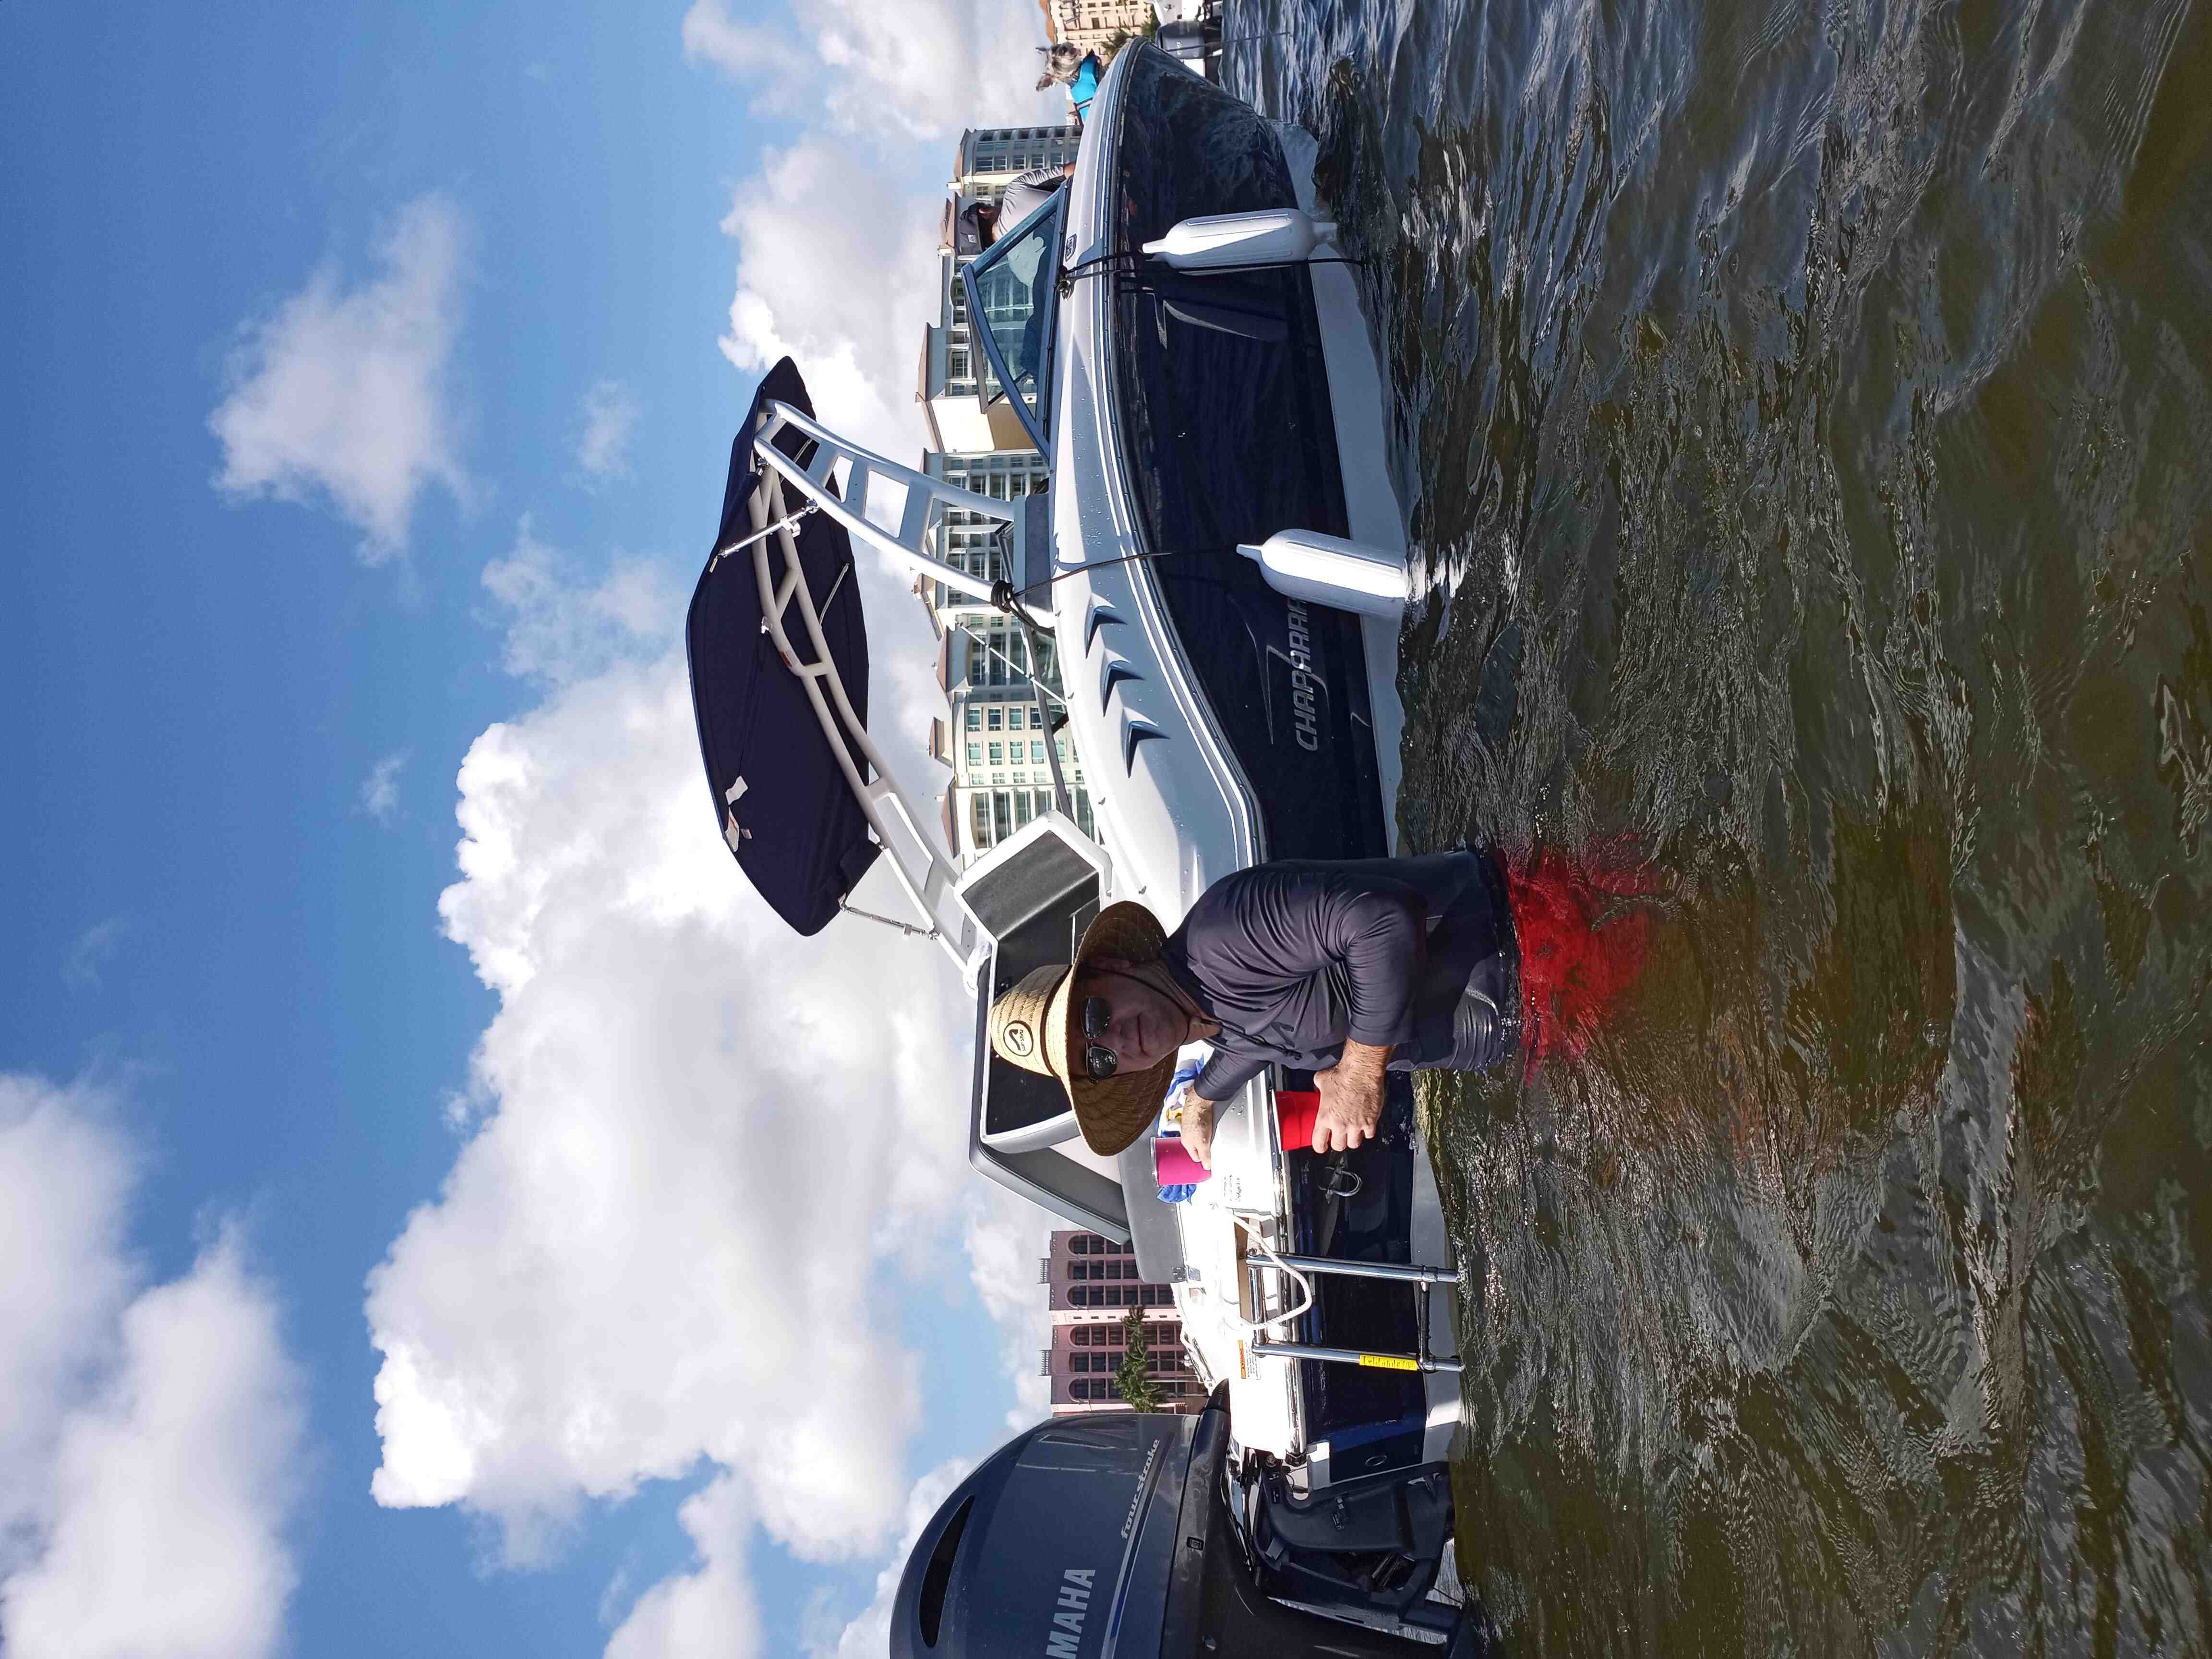  boat rentals Florida PEMBROKE PINES Florida  Chaparral SSI 21 Ob 2021 21 